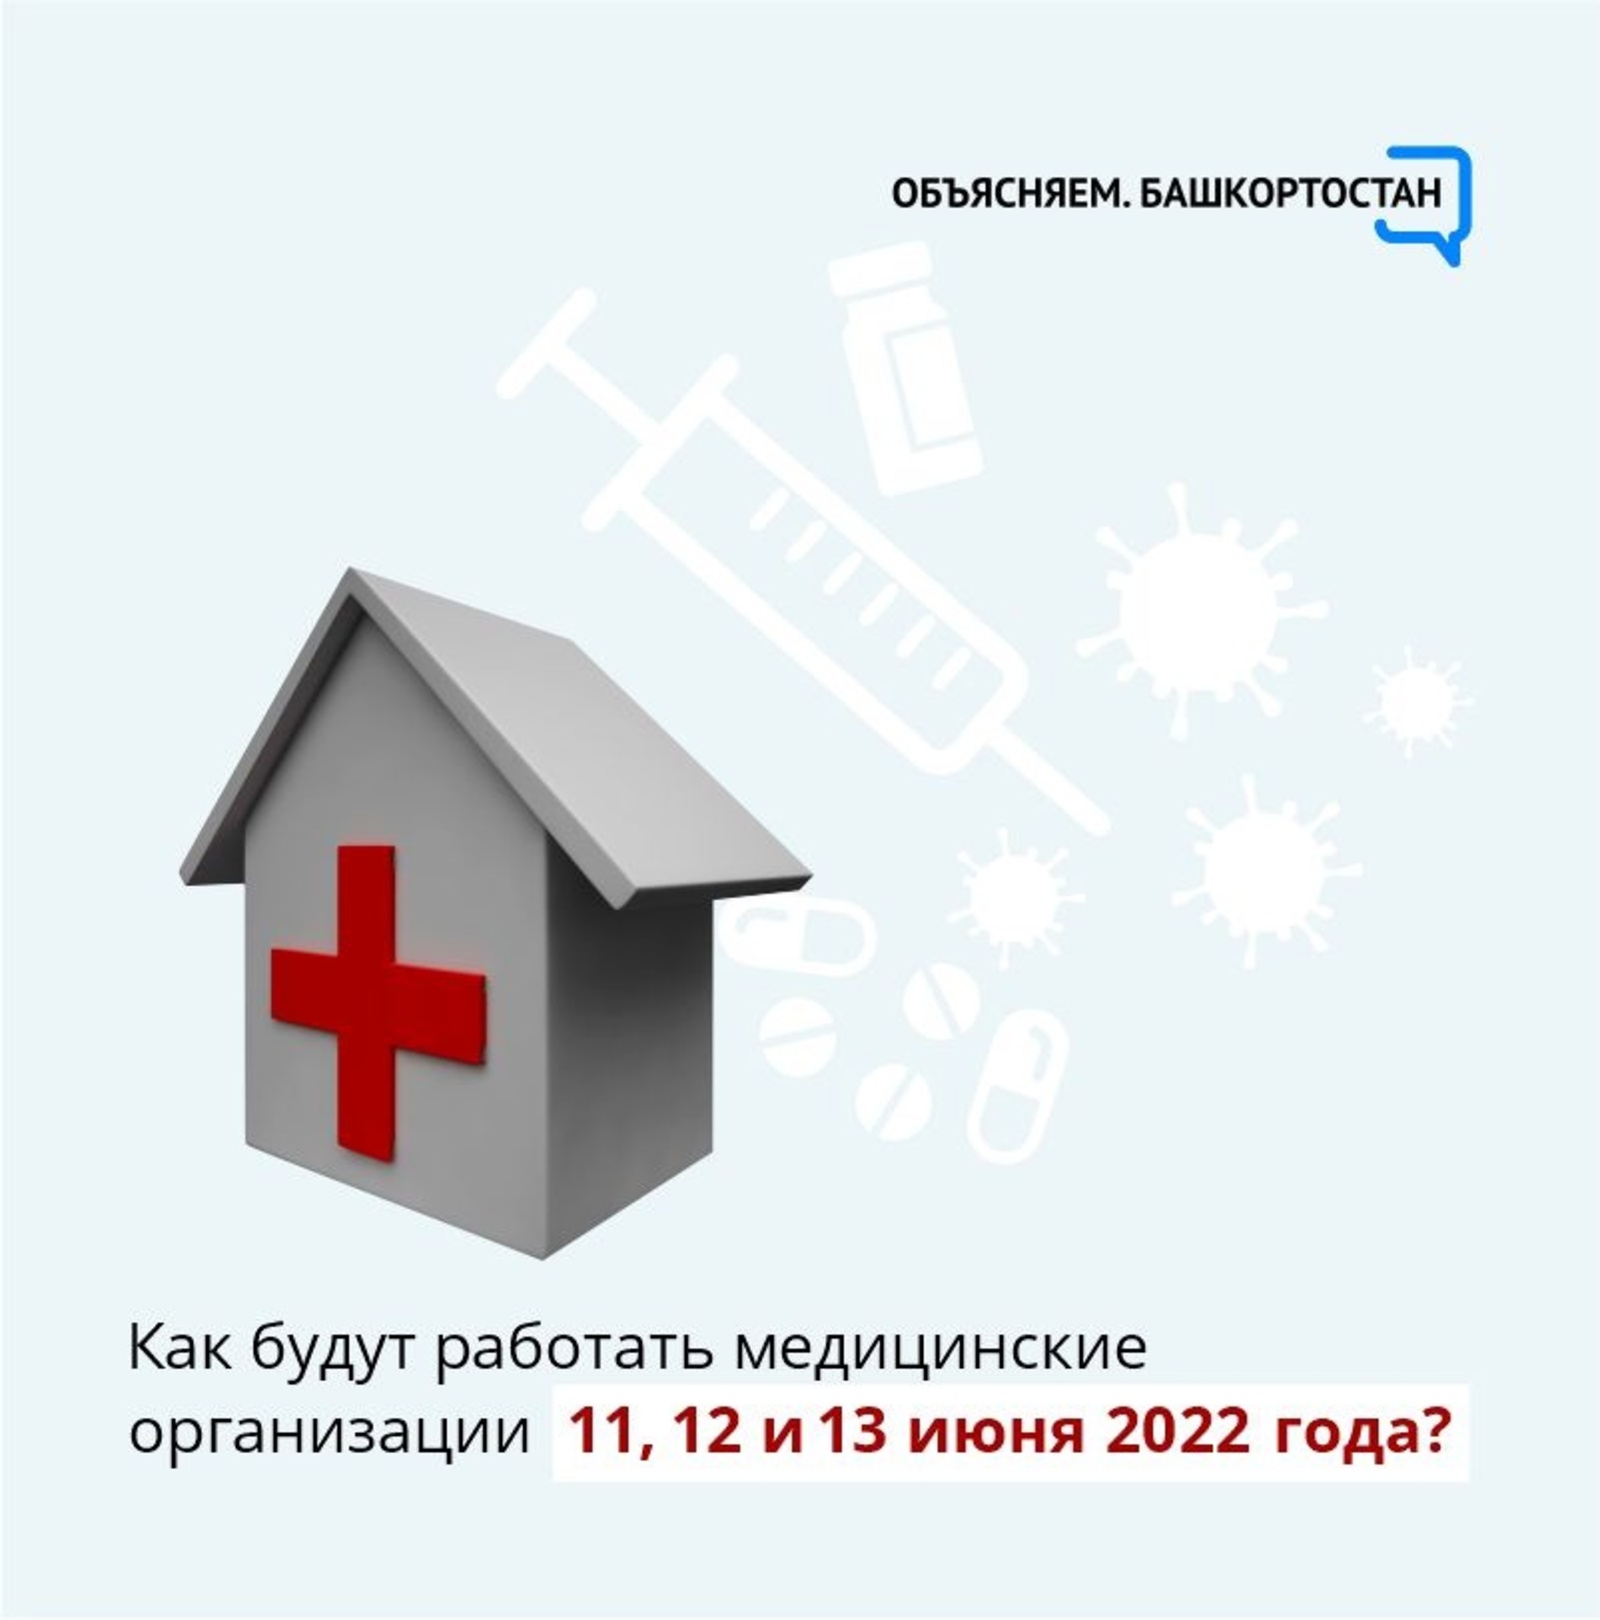 Как будут работать медицинские организации 11, 12 и 13 июня 2022 года?